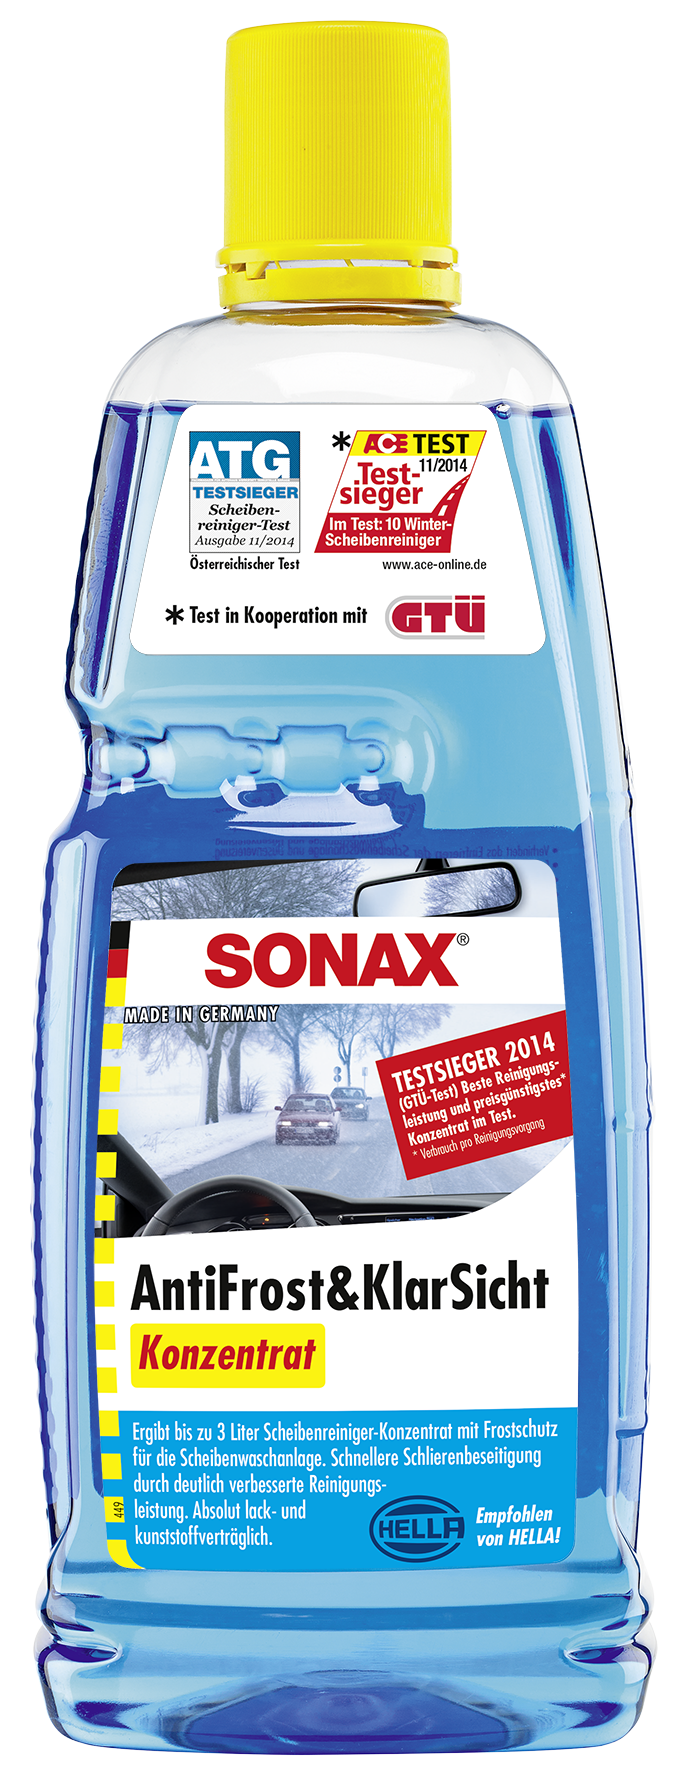 SONAX AntiFrost plus Klarsicht Konzentrat Citrus 20 l Scheiben Frostschutz